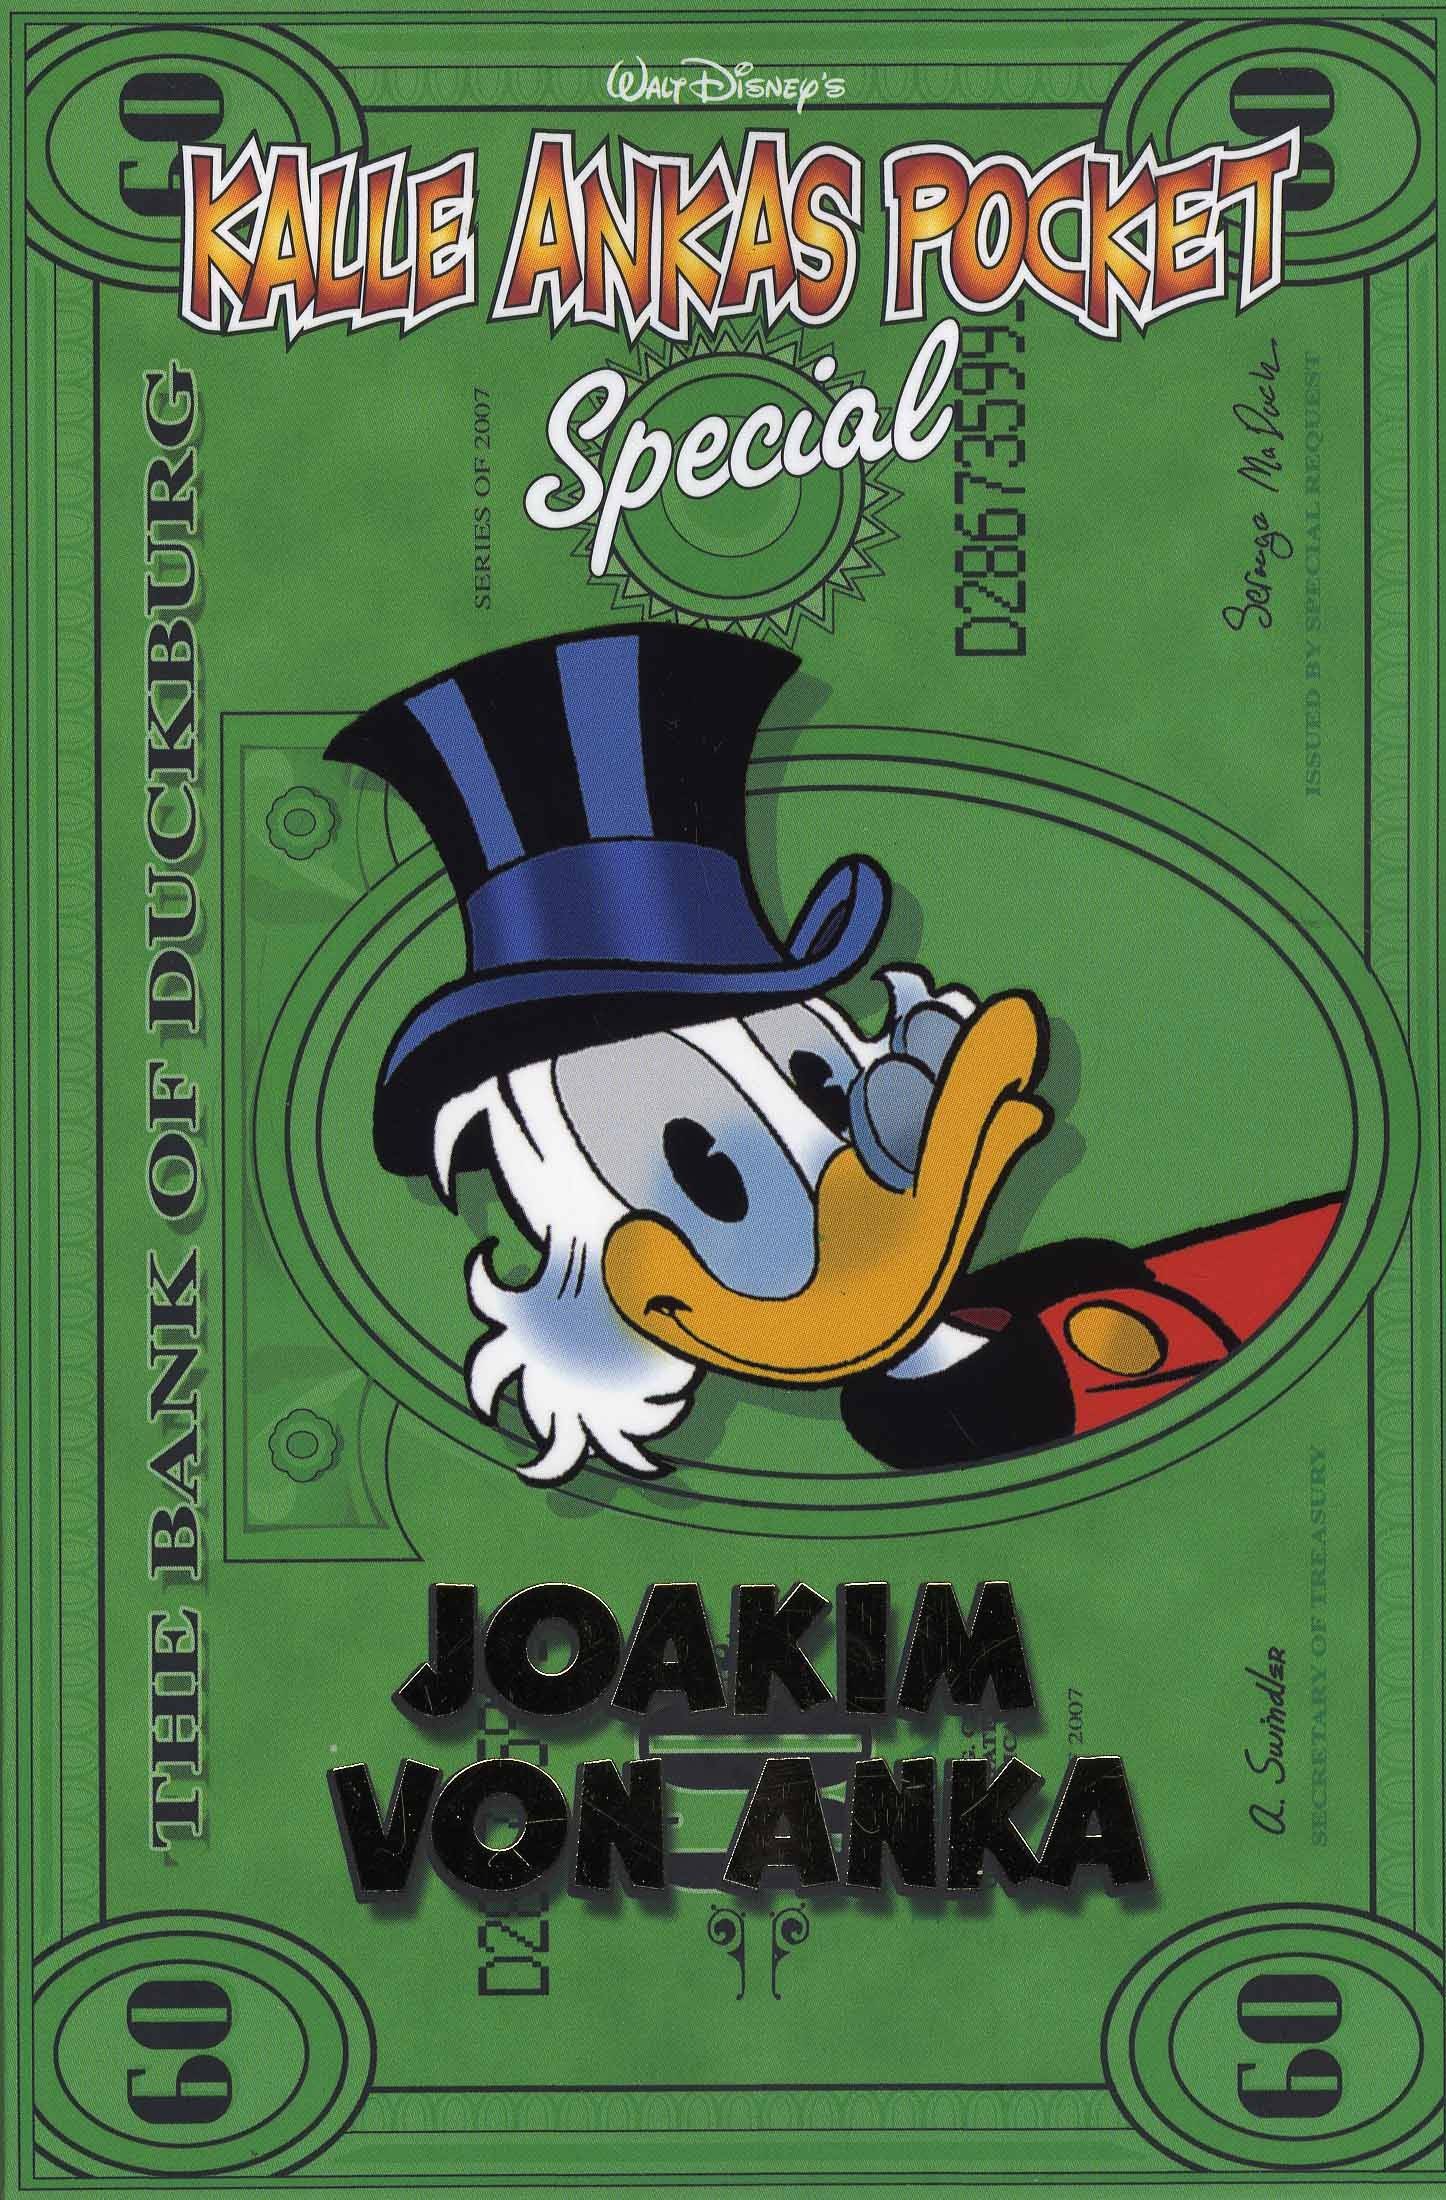 Kalle Ankas Pocket Special : Joakim von Anka